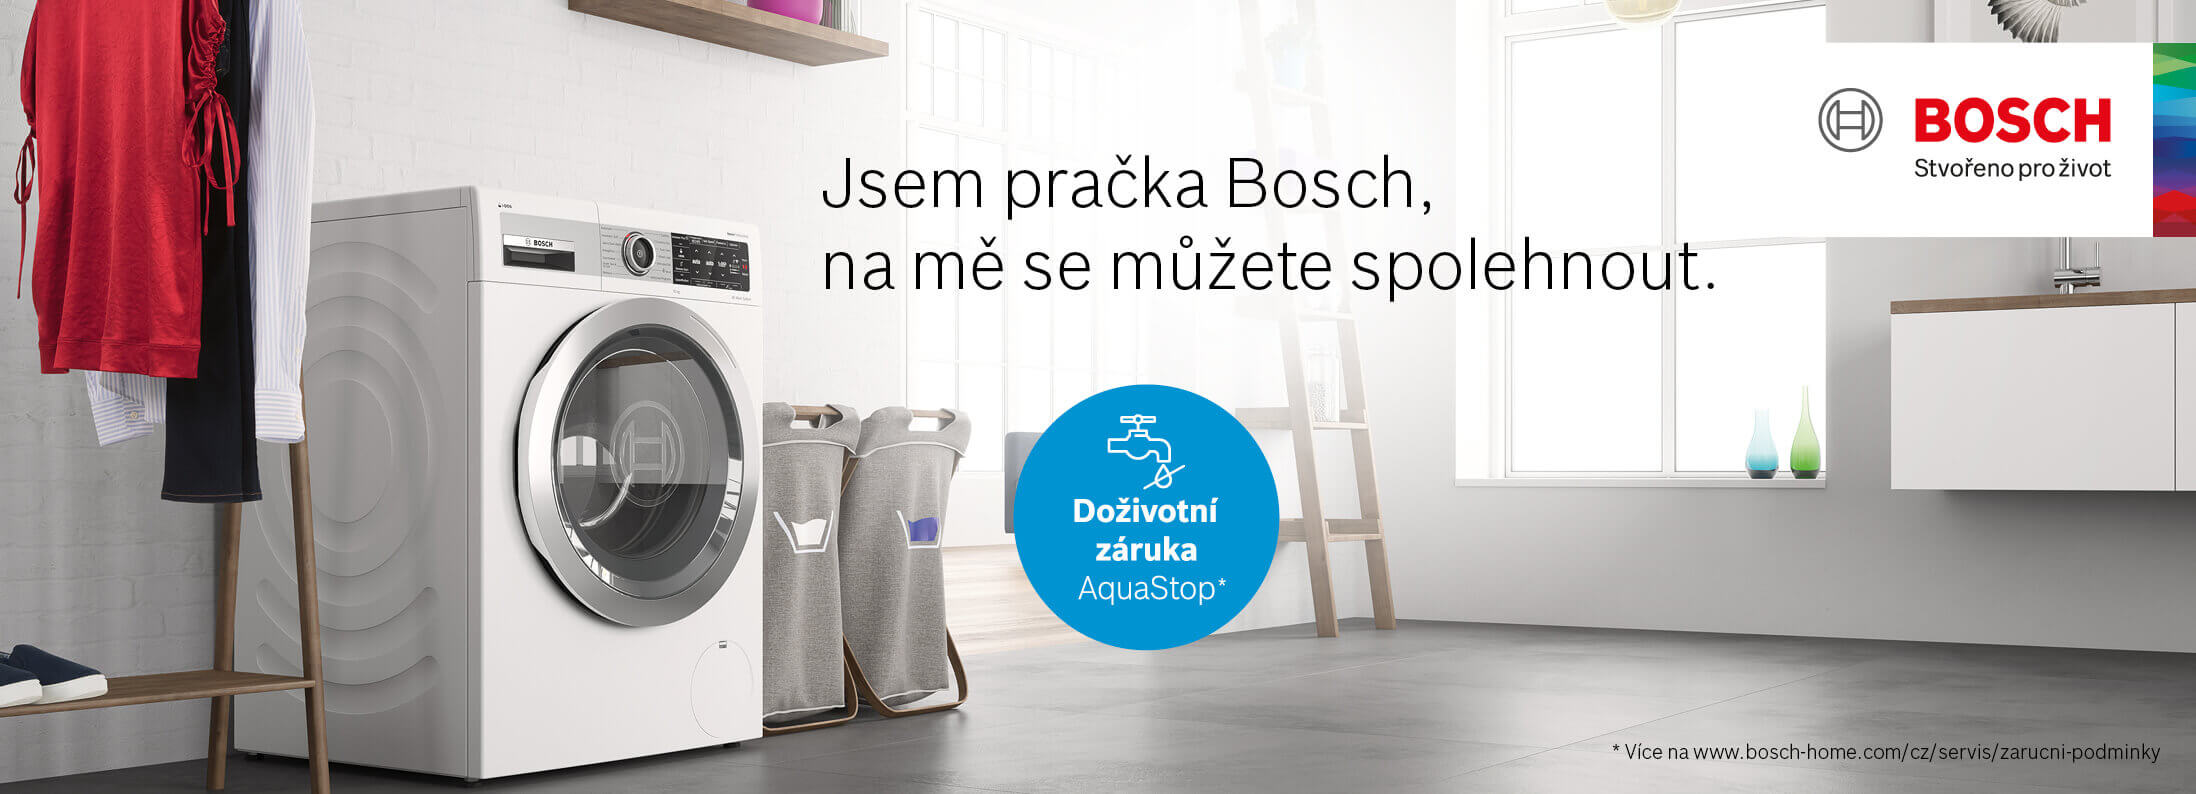 Bosch - Pračky - Doživotní záruka na AquaStop